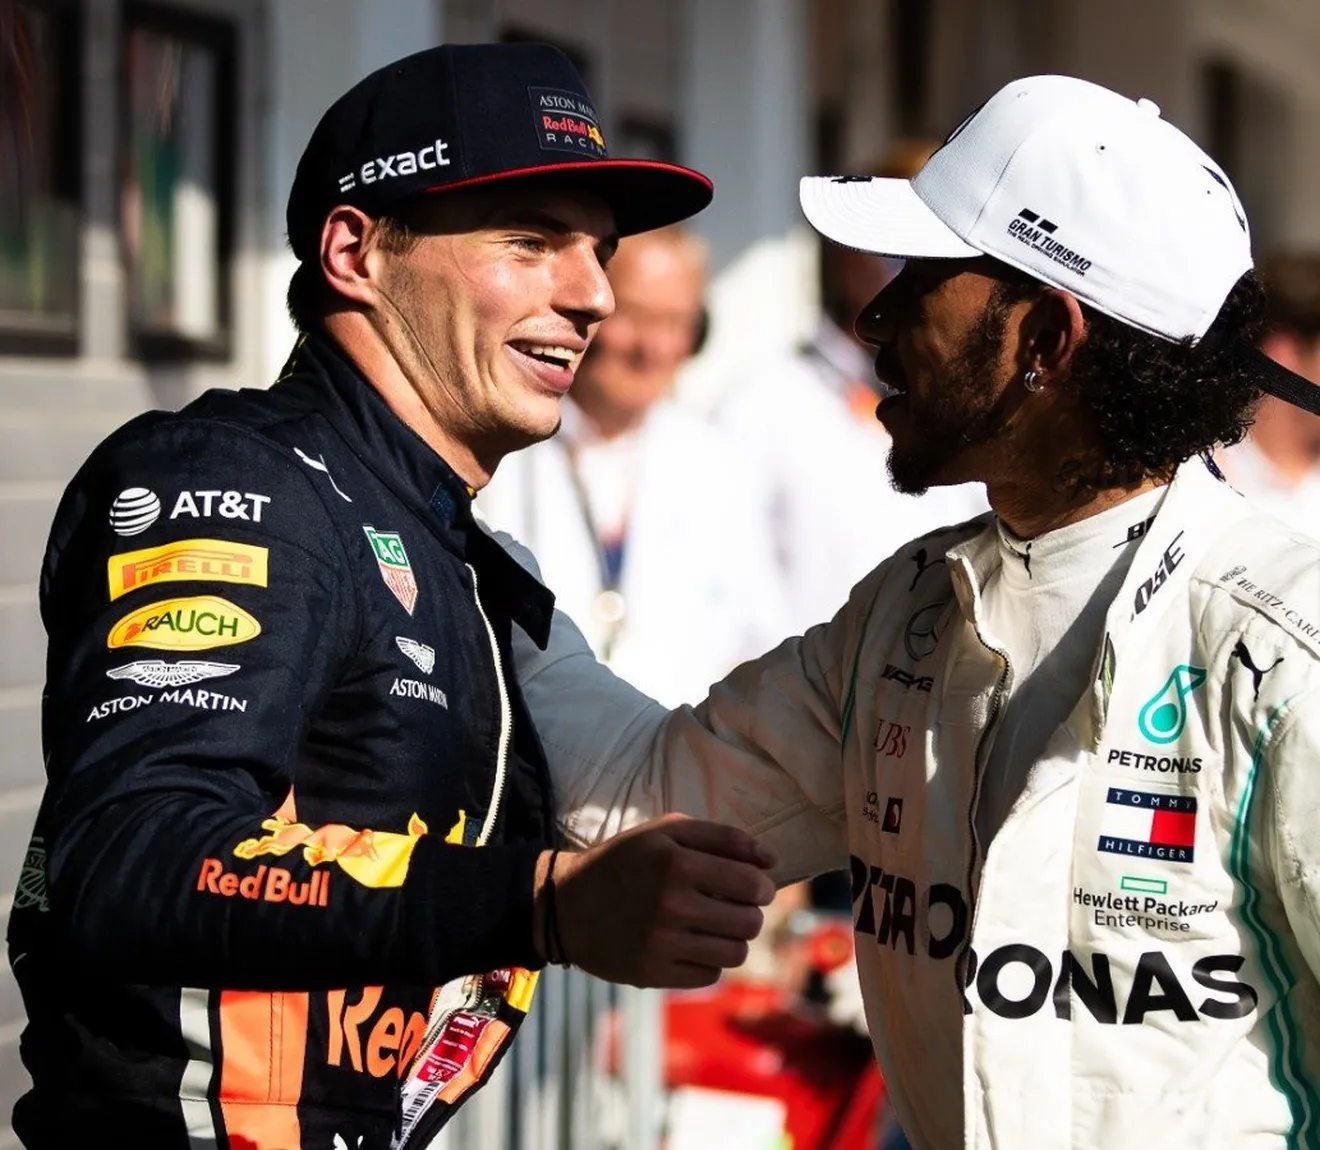 Hamilton "se partió de risa" con los comentarios de Verstappen sobre Rosberg